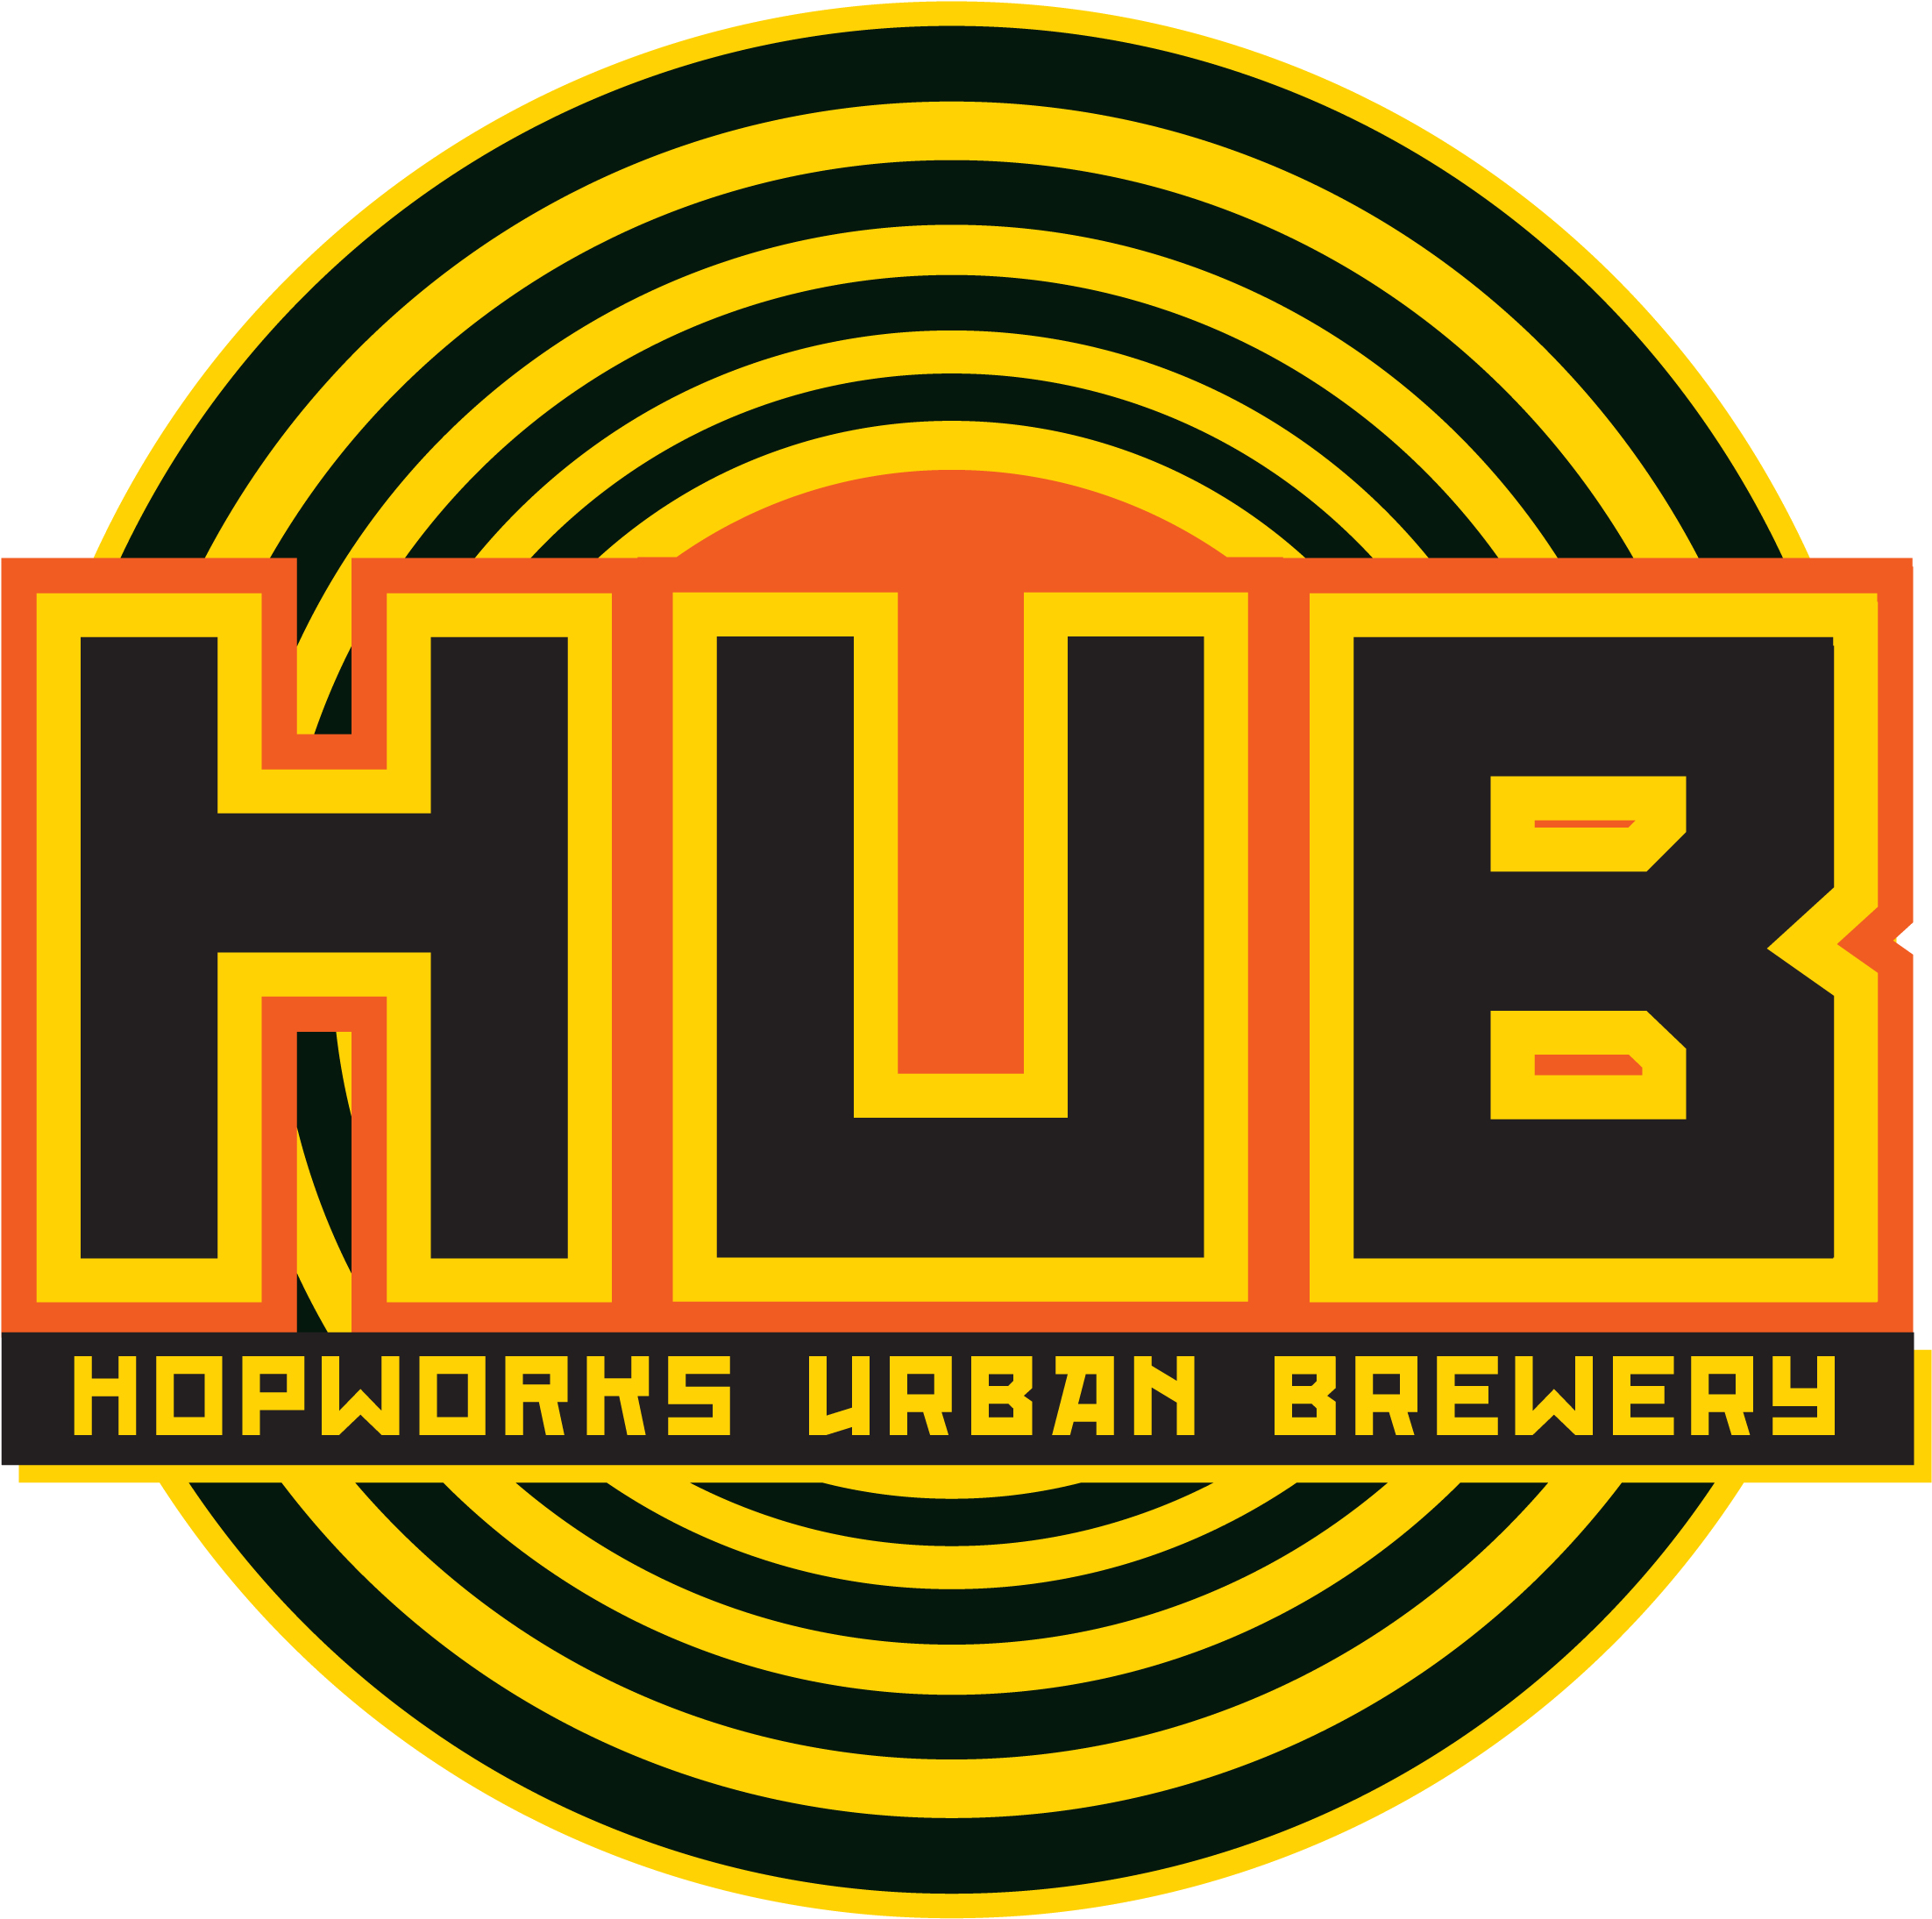 Hopworks Urban Brewery (2400x2400)